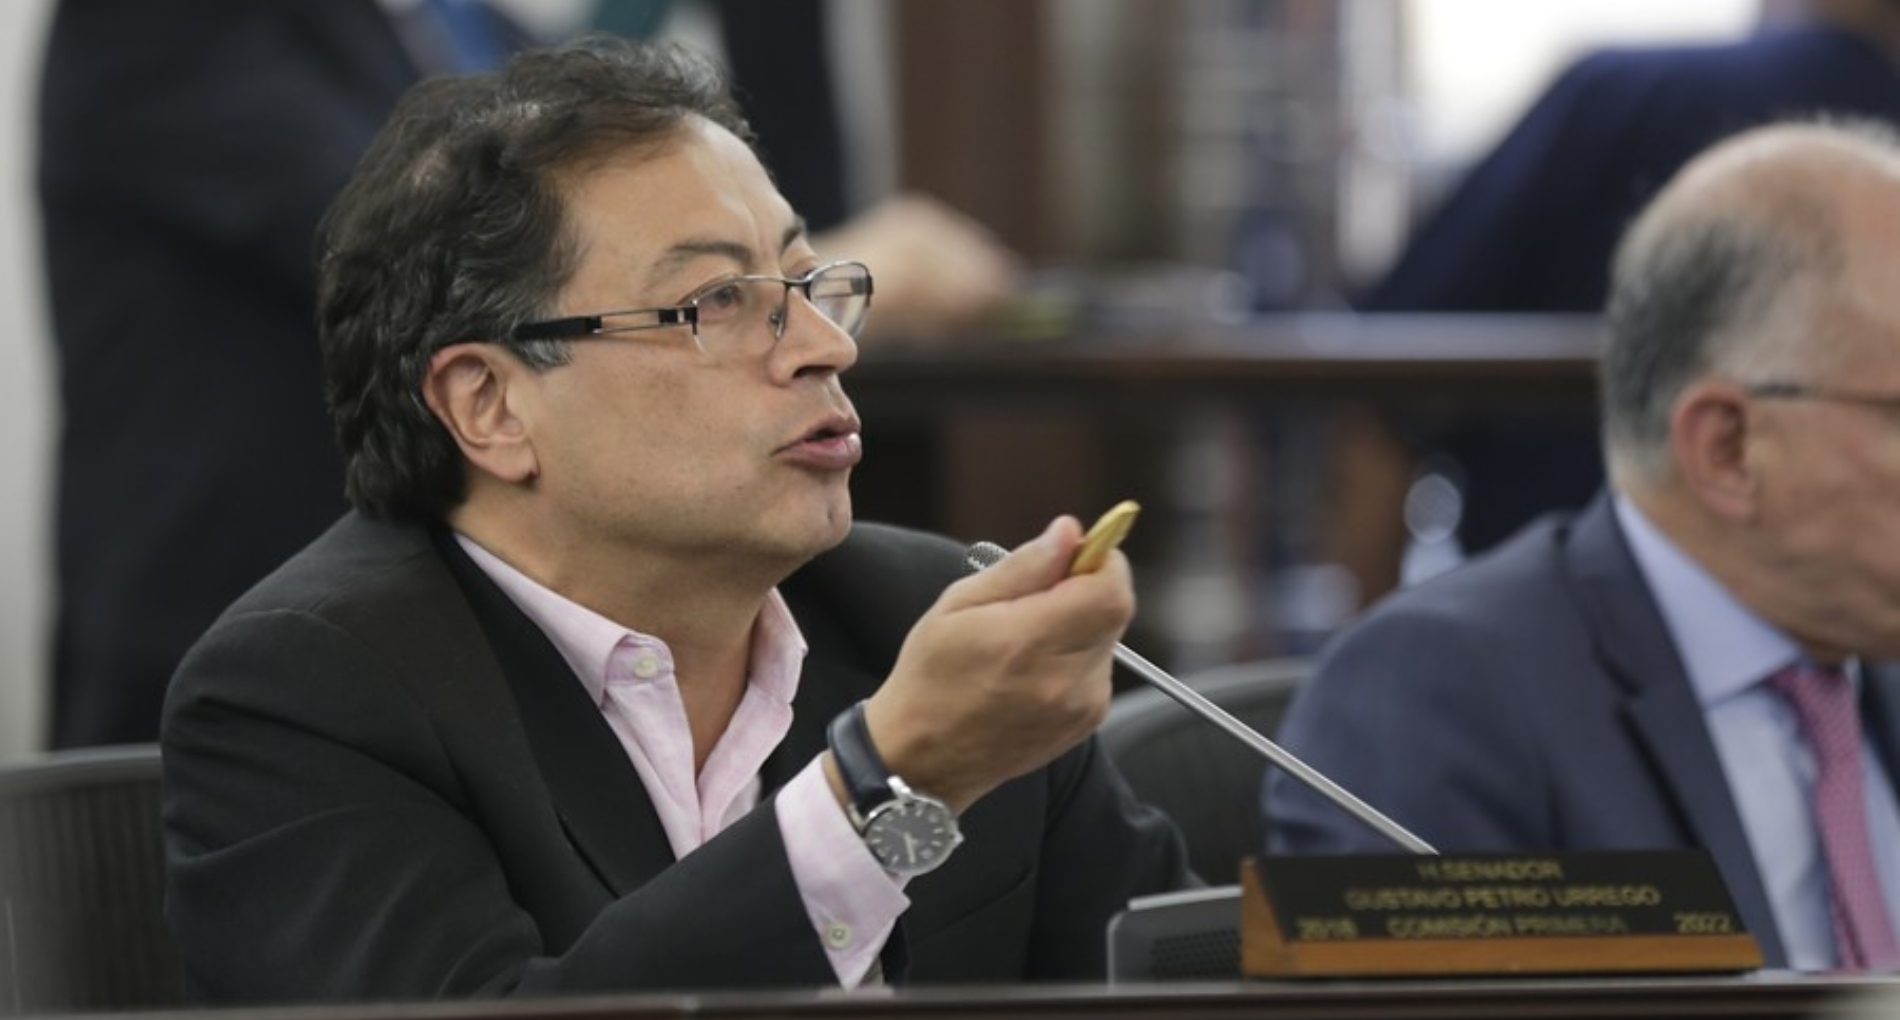 El izquierdista Gustavo Petro buscará imponerse en las elecciones presidenciales de Colombia este año